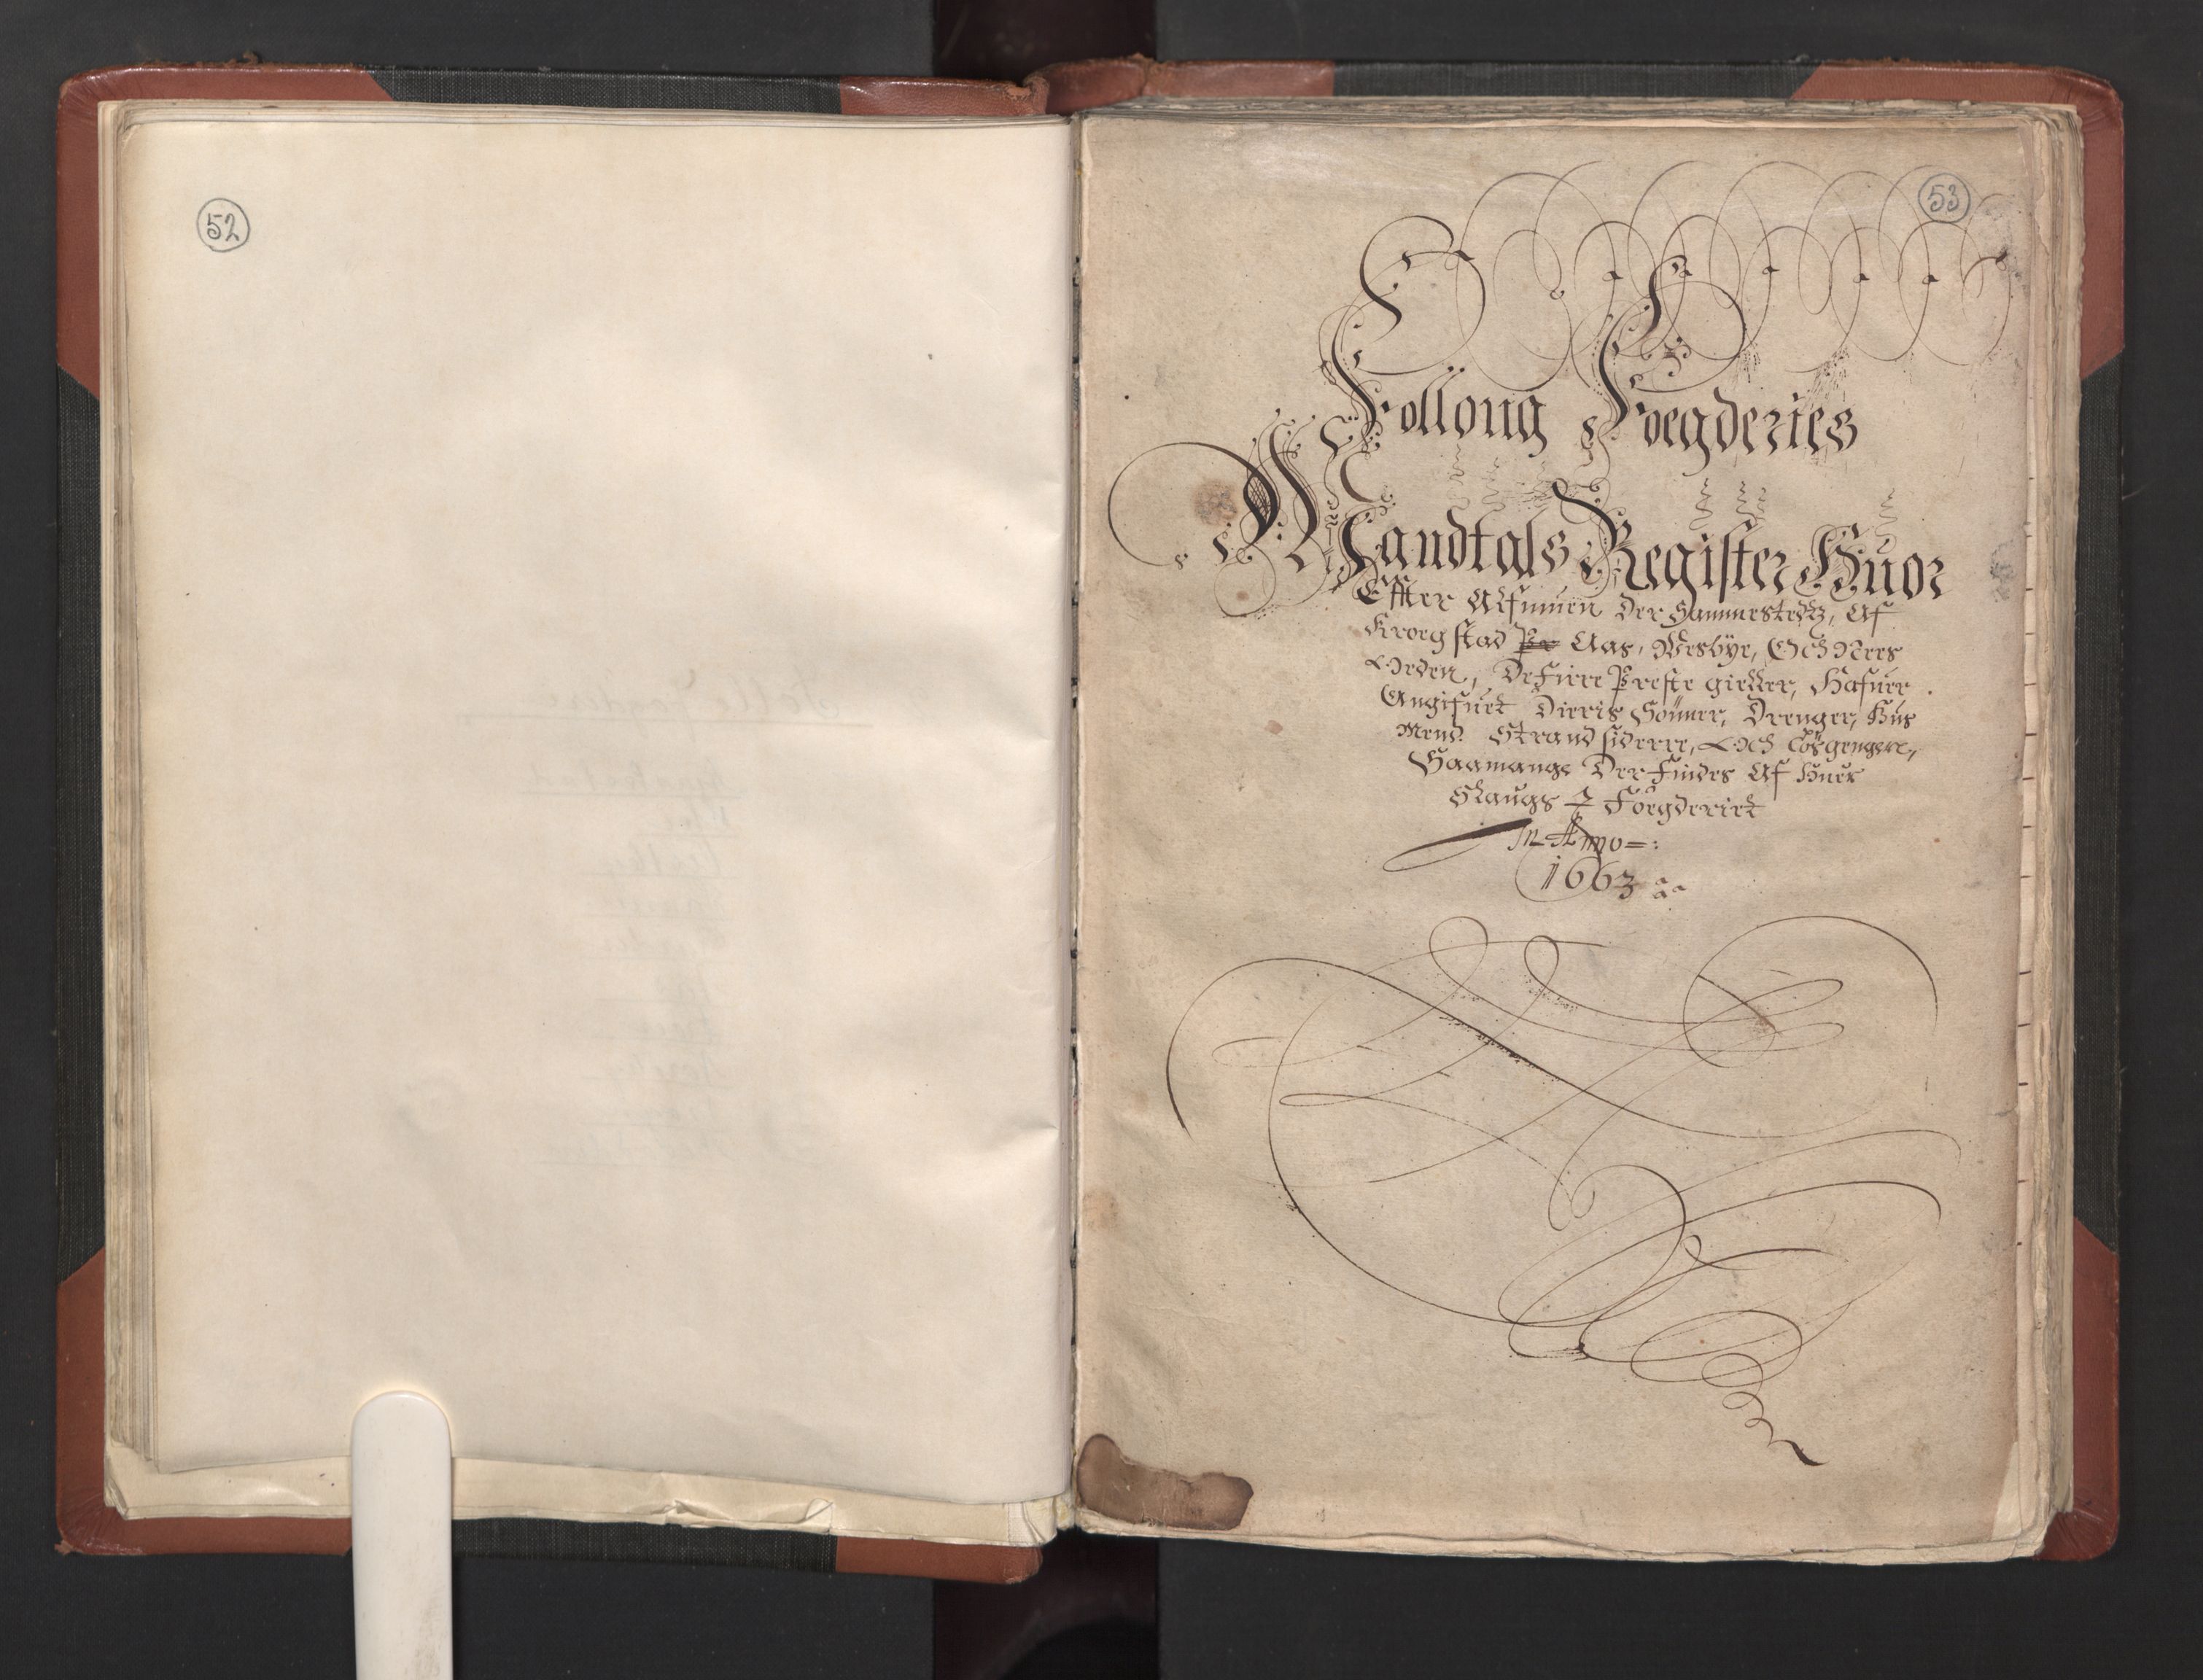 RA, Fogdenes og sorenskrivernes manntall 1664-1666, nr. 2: Aker fogderi, Follo fogderi, Nedre Romerike fogderi og Øvre Romerike fogderi, 1664, s. 52-53